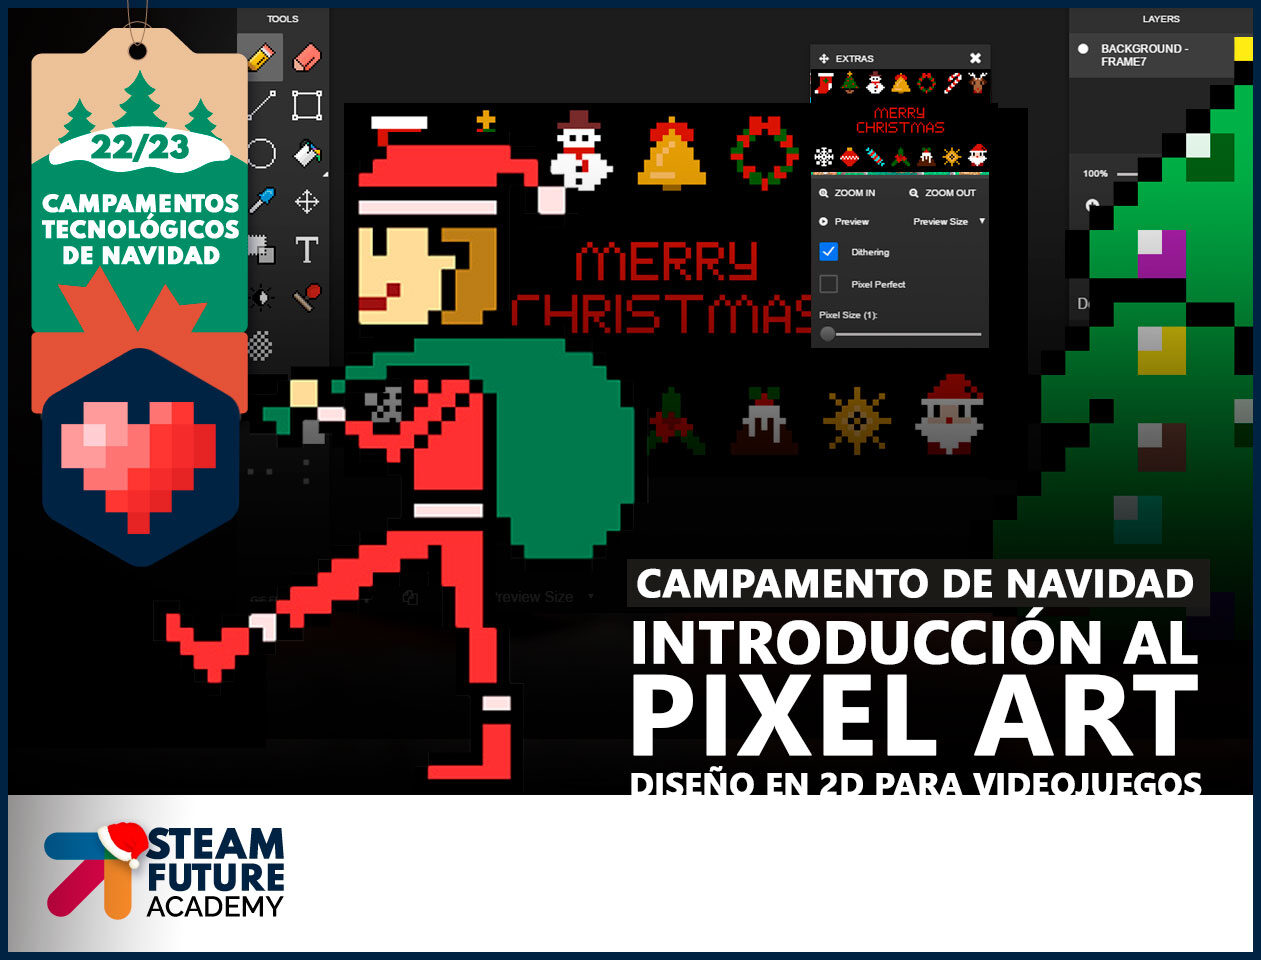 Steam Future Academy - Campamento de Navidad - Introducción al Pixel Art